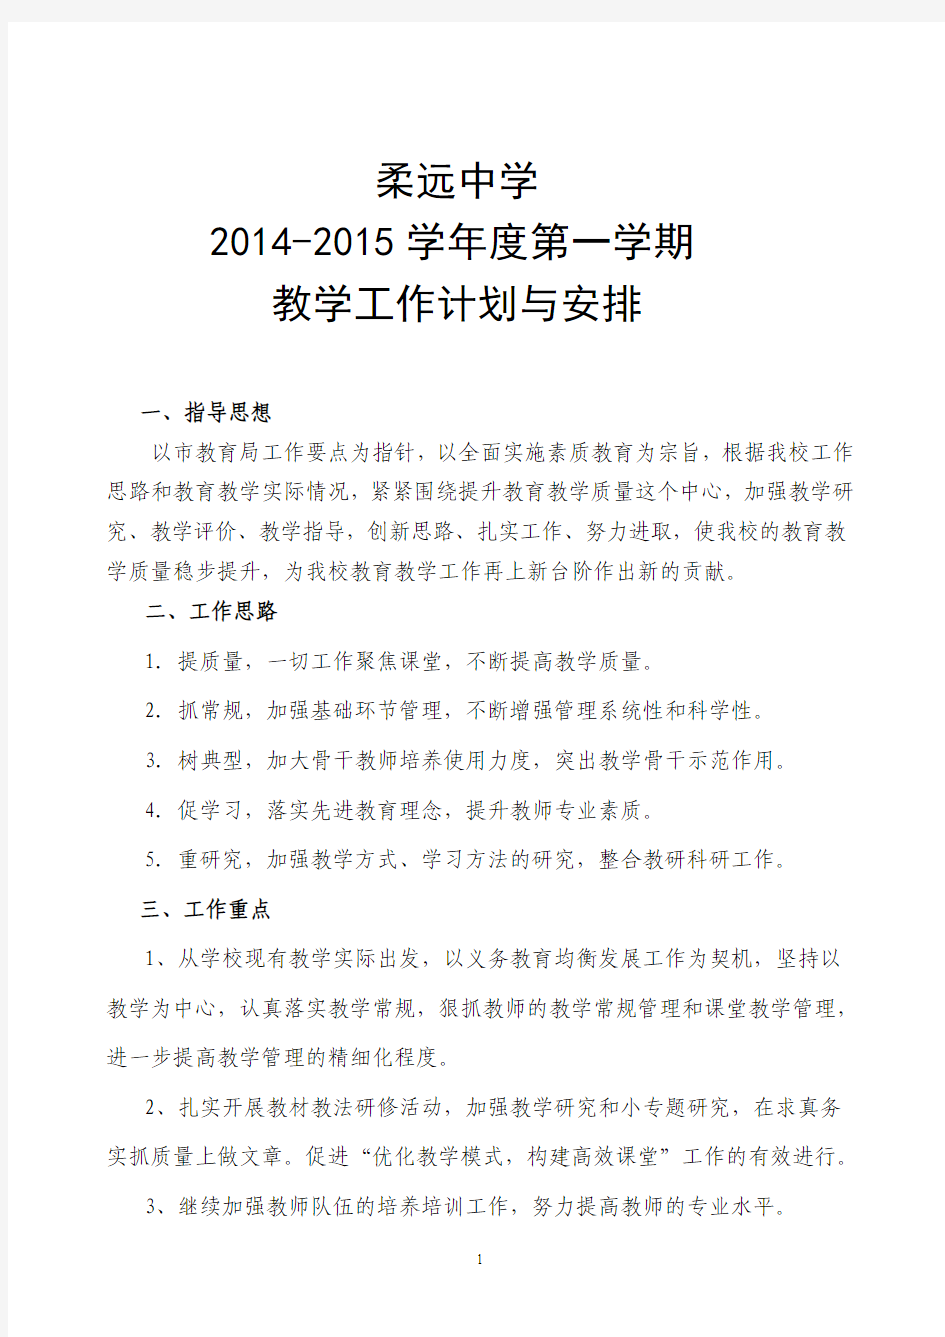 柔远中学2014-2015学年第一学期教学工作计划(bz)